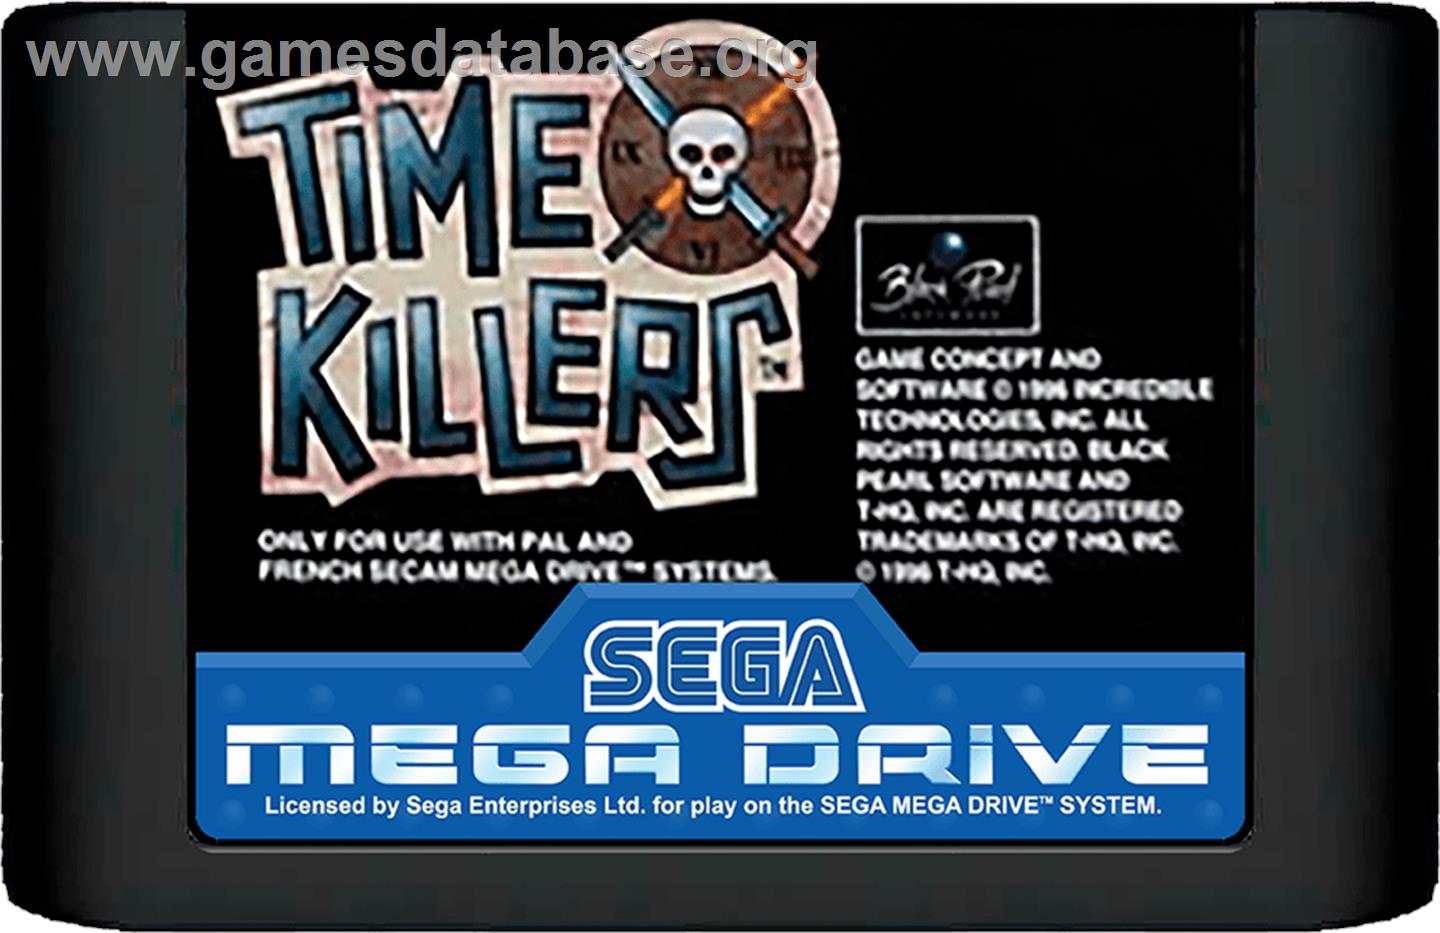 Time Killers - Sega Genesis - Artwork - Cartridge